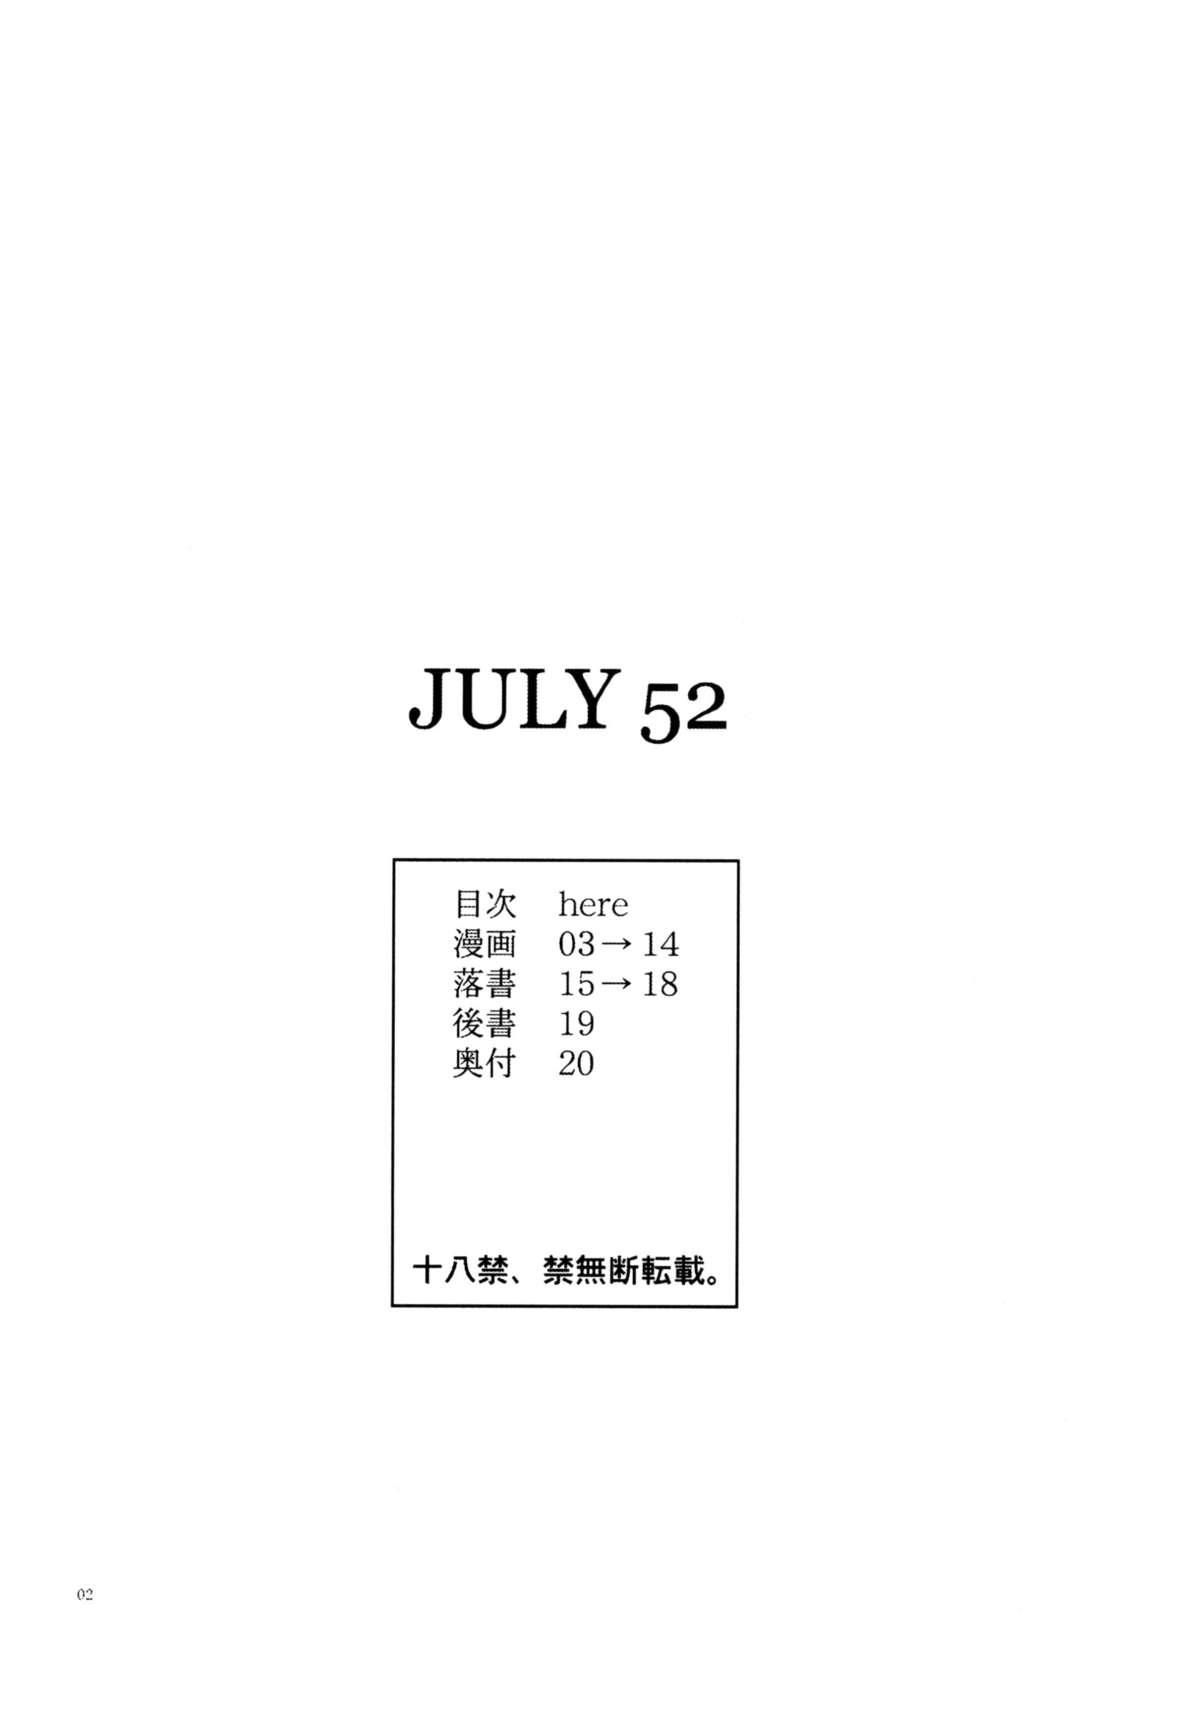 JULY 52 2